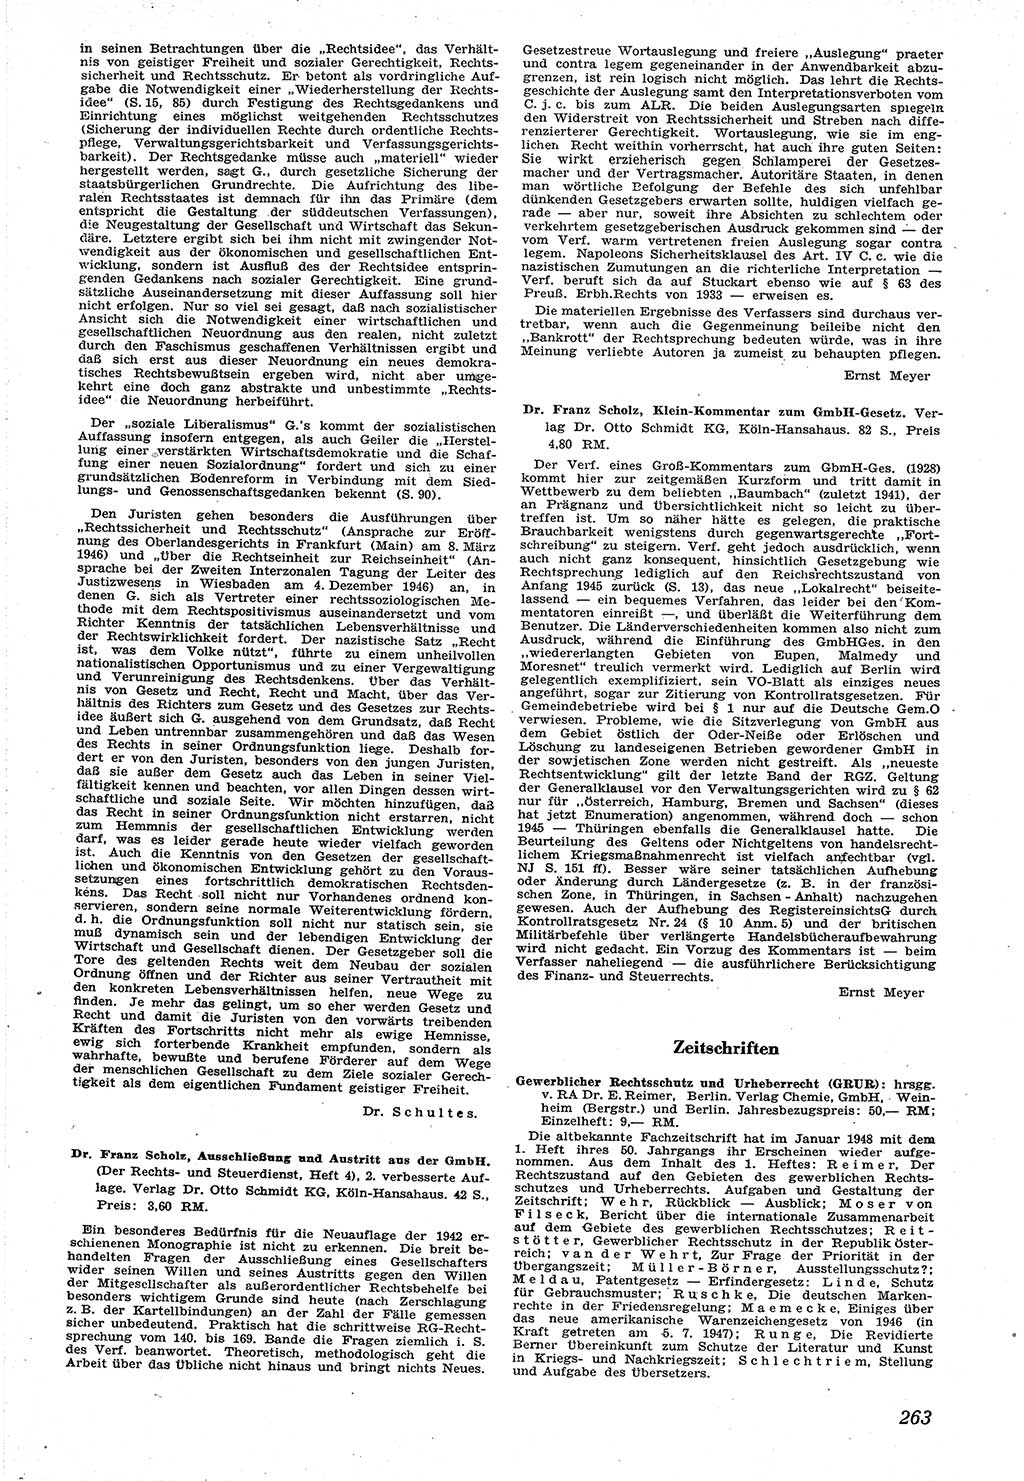 Neue Justiz (NJ), Zeitschrift für Recht und Rechtswissenschaft [Sowjetische Besatzungszone (SBZ) Deutschland], 1. Jahrgang 1947, Seite 263 (NJ SBZ Dtl. 1947, S. 263)